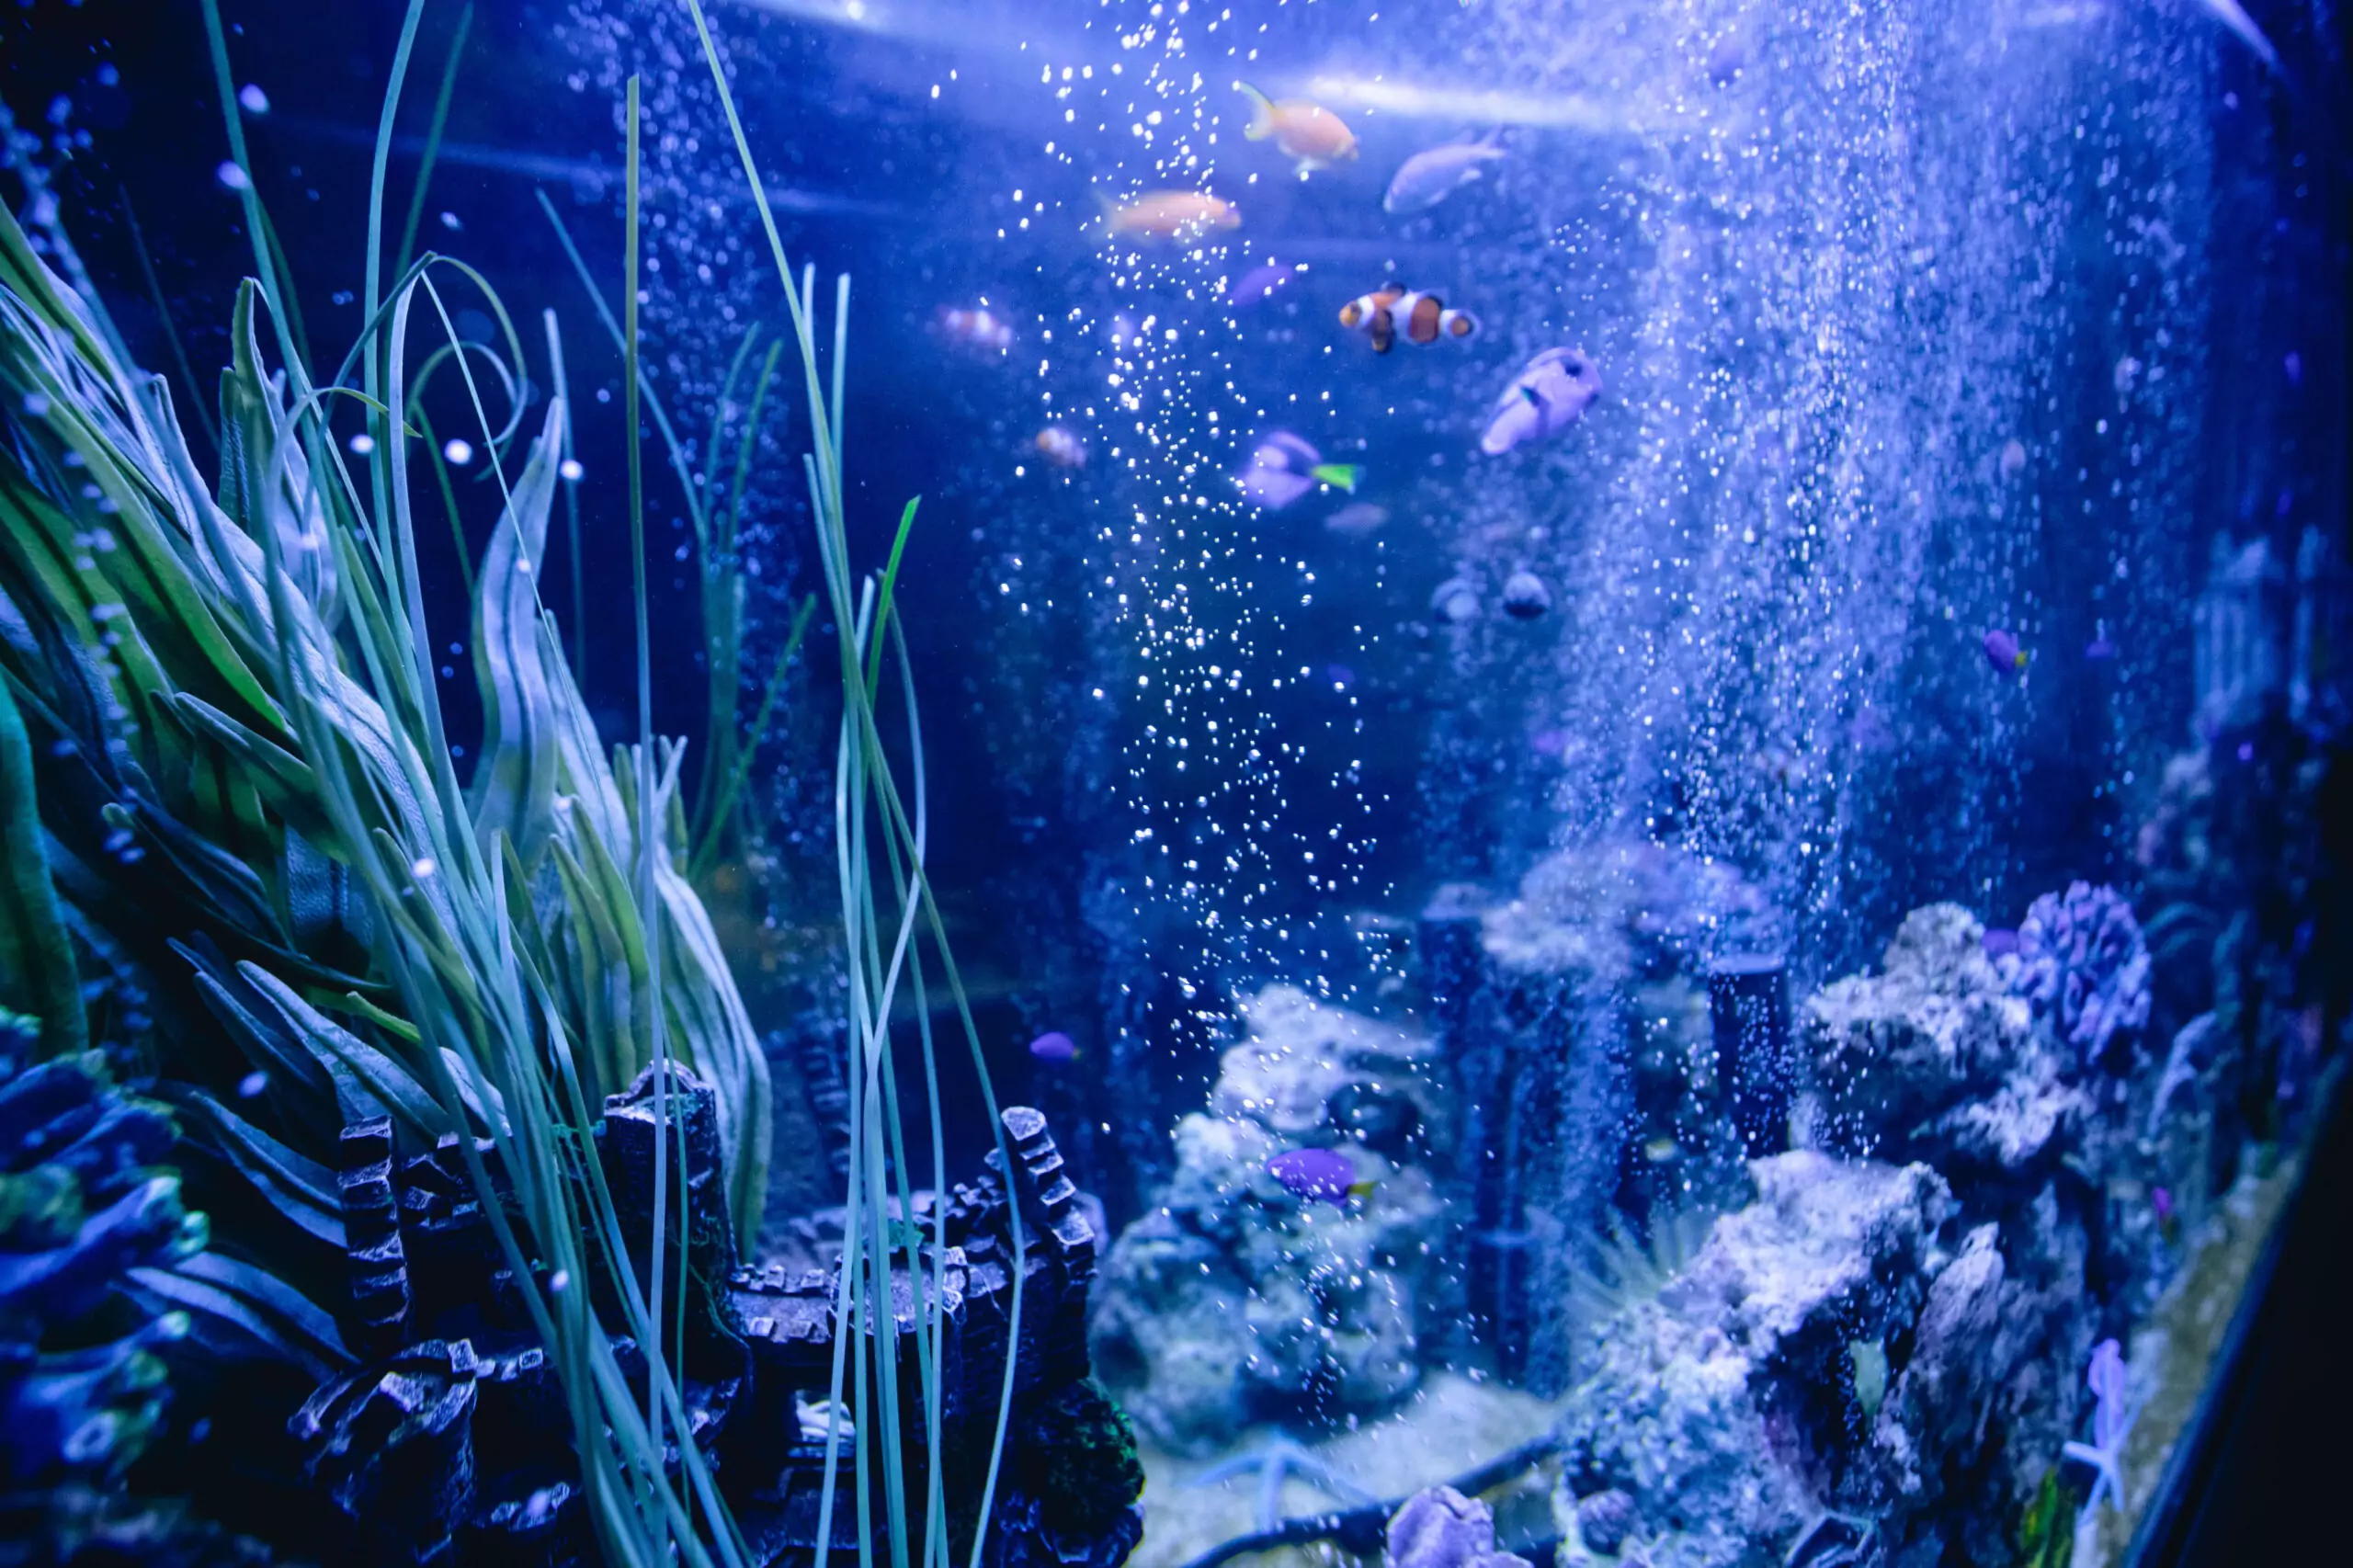 Fish in a restaurant aquarium